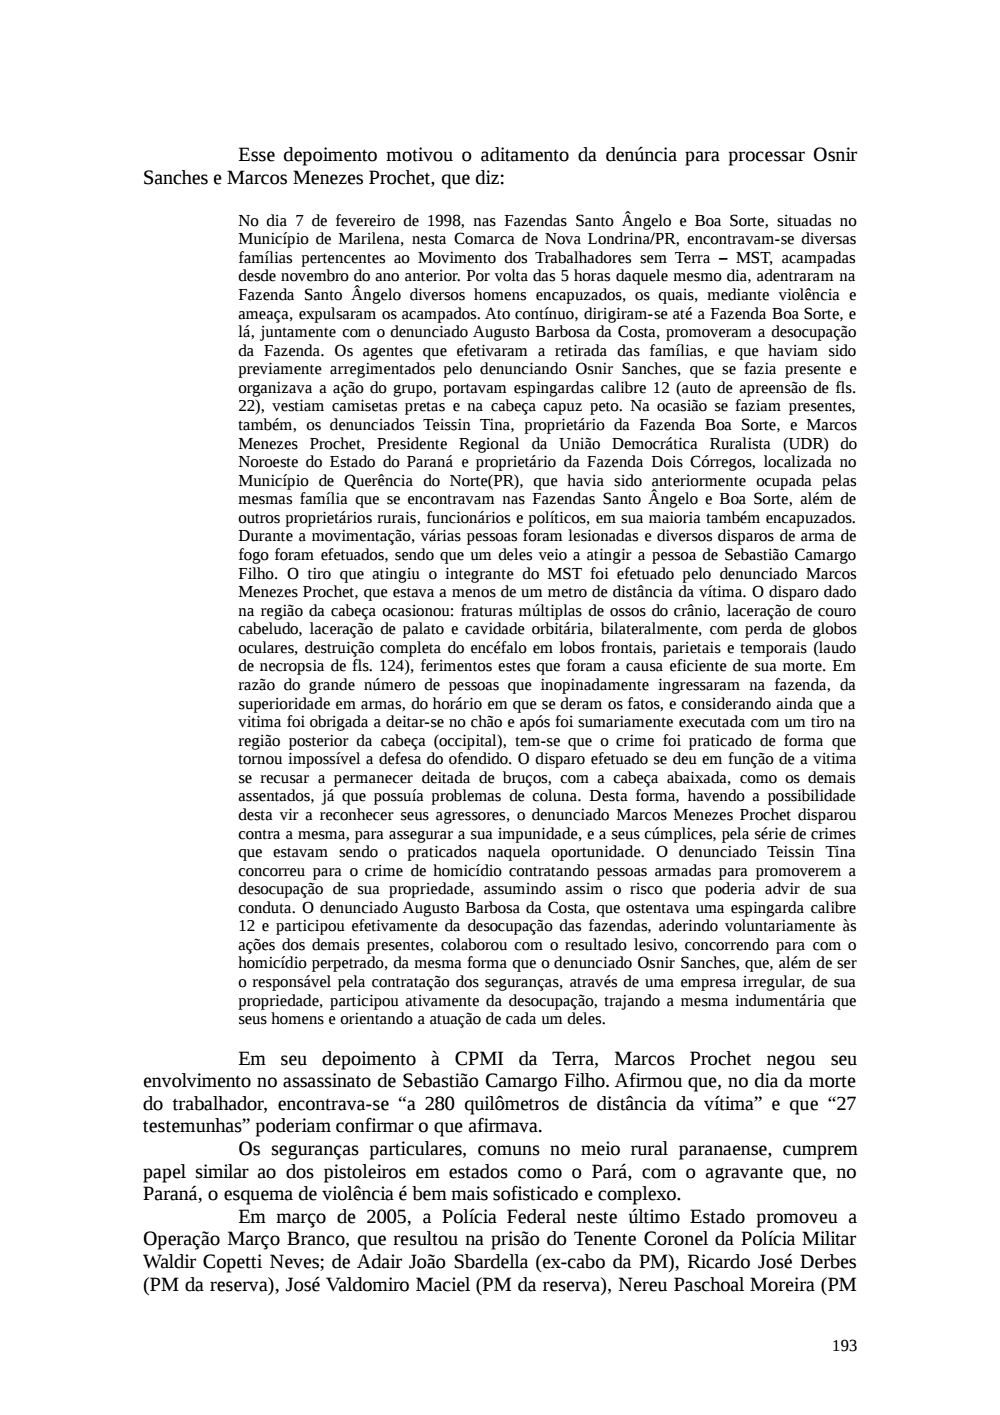 Page 193 from Relatório final da comissão